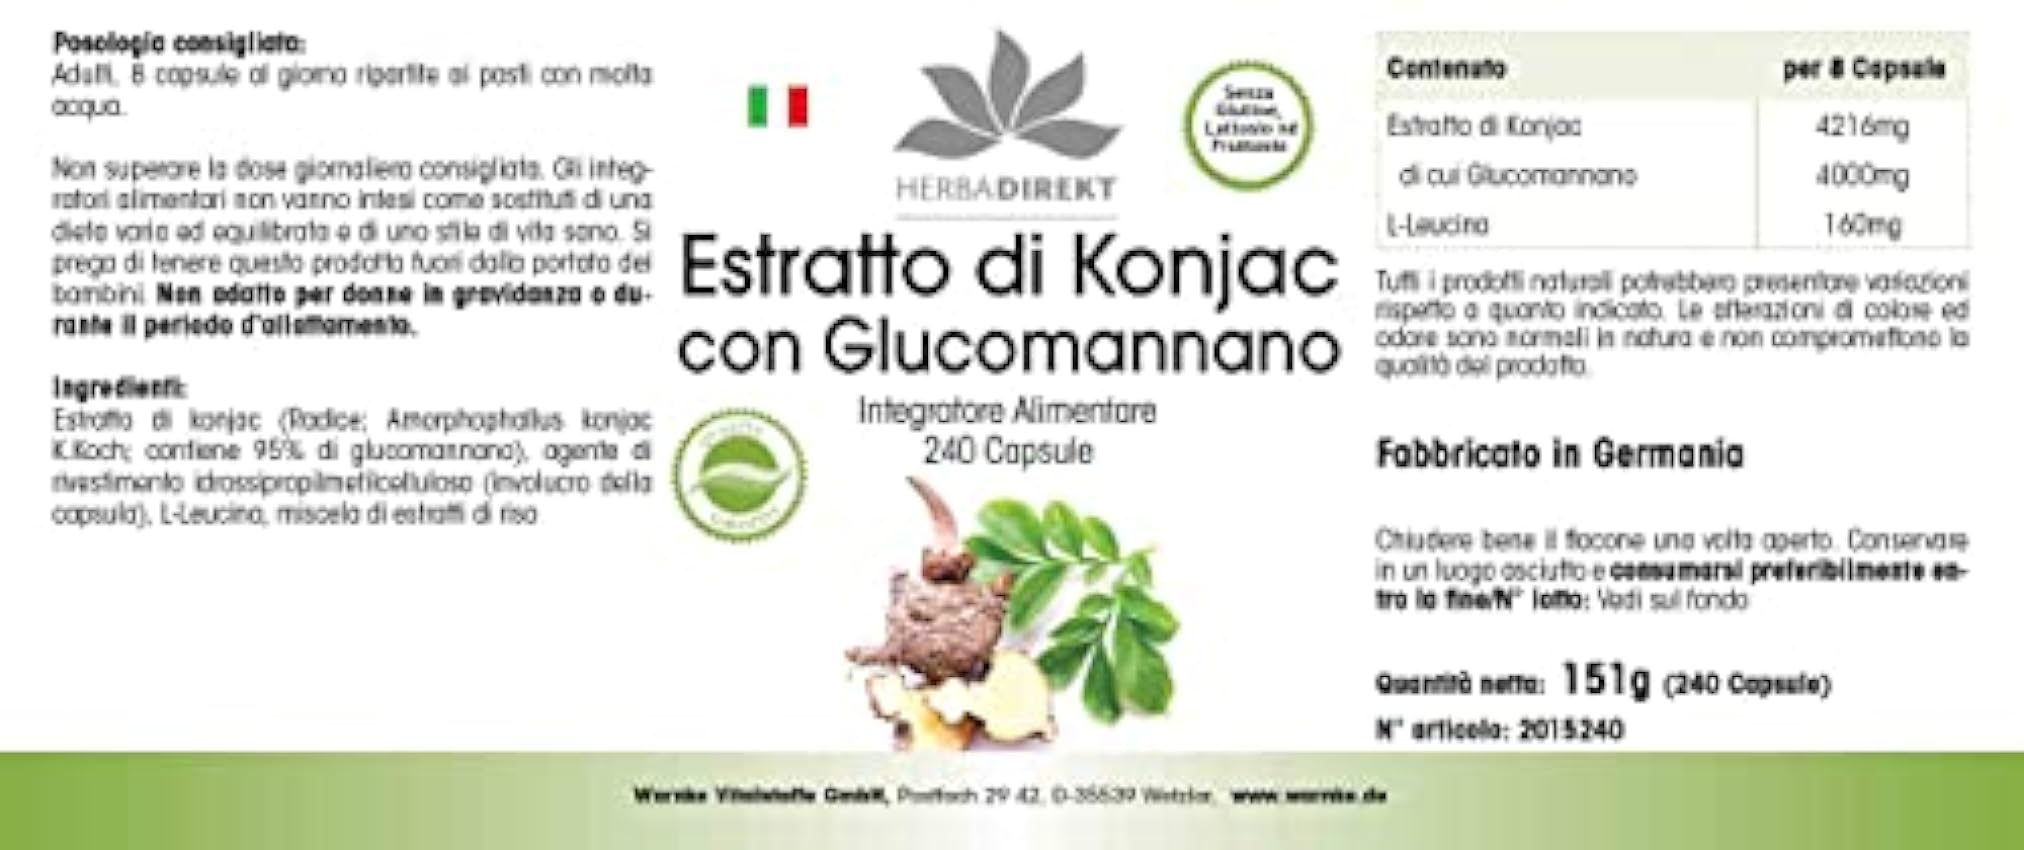 Glucomanano 500mg – de extracto de raíz de Konjac – 95% de Glucomanano – Vegano – 240 cápsulas | HERBADIREKT by Warnke Vitalstoffe PT3IrNyG